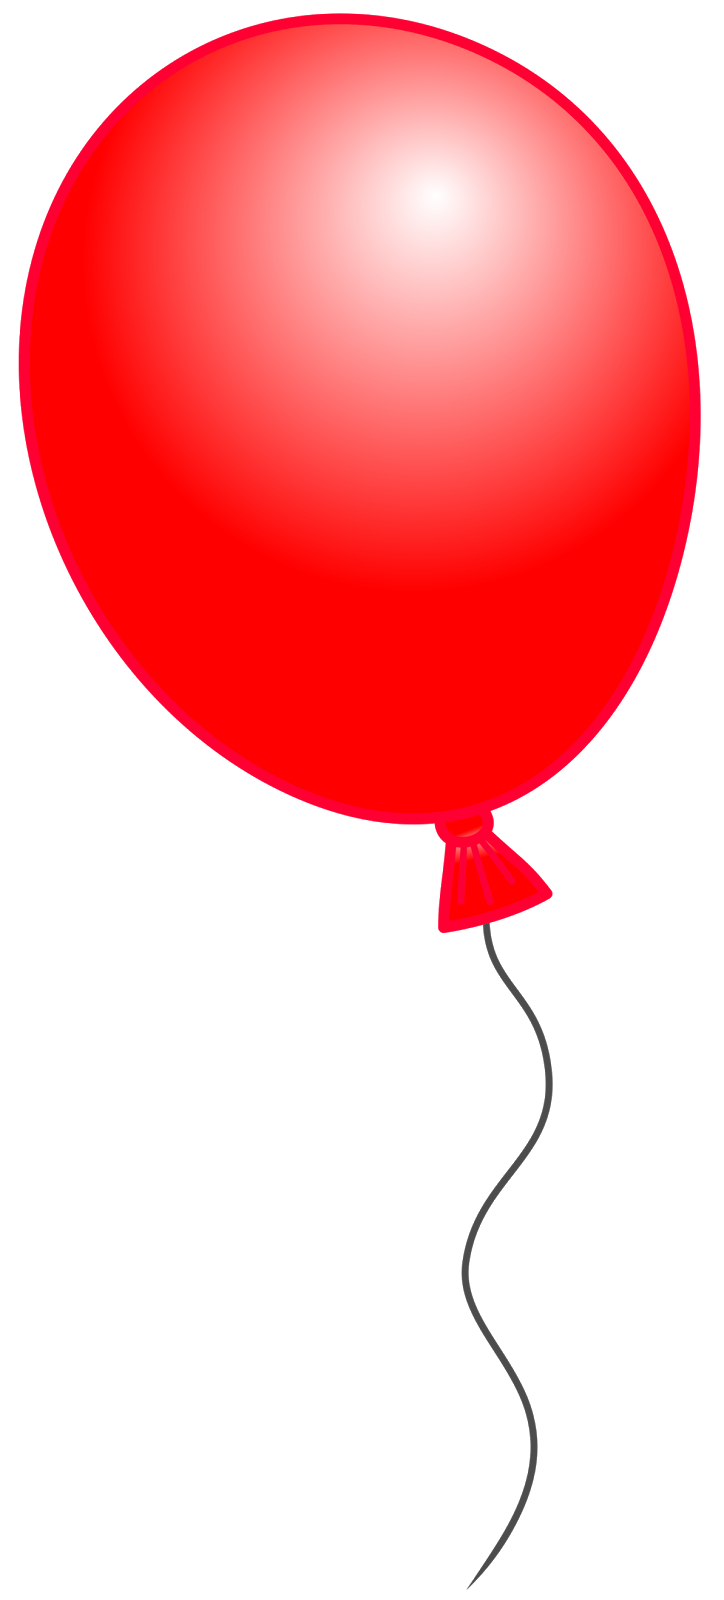 You Can Use Each Balloon On I - Ballon Clip Art